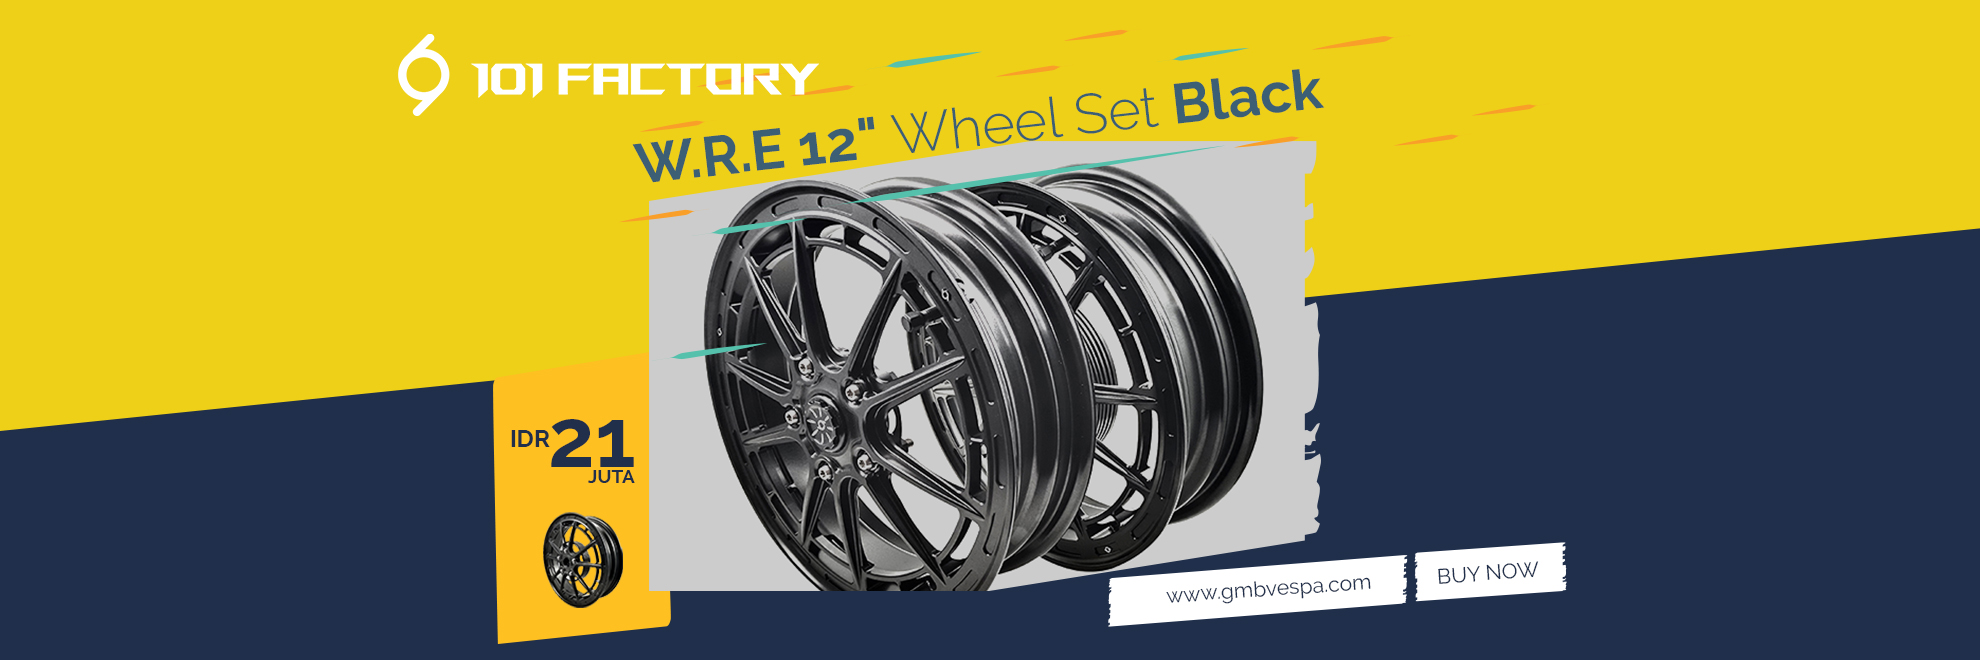 1O1 Factory W.R.E 12" Wheel Set Black